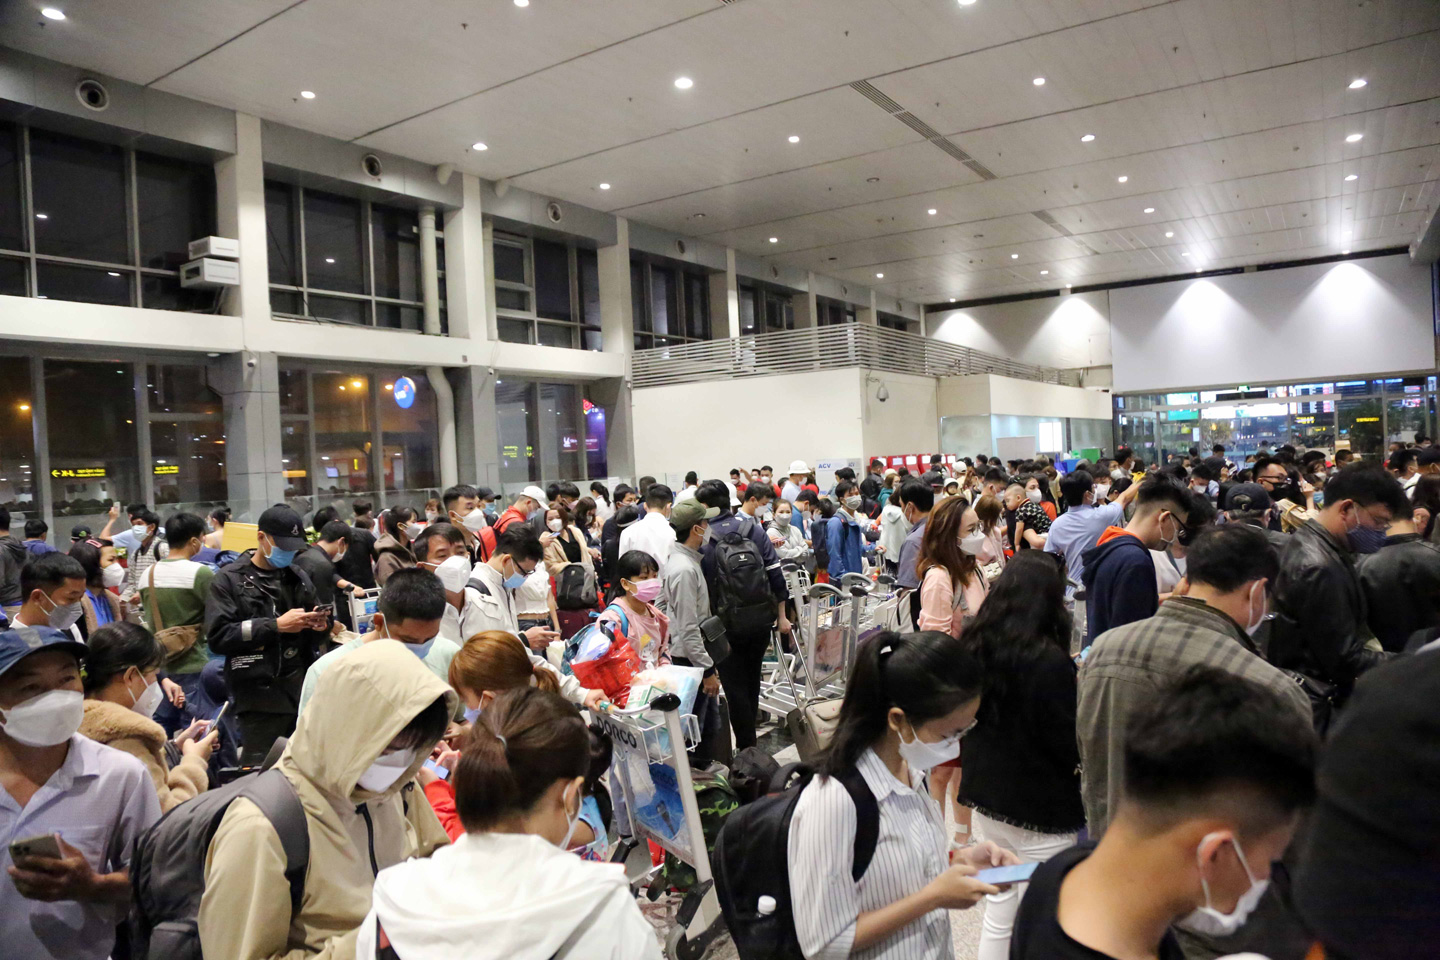 Ảnh: Sân bay Tân Sơn Nhất nghẹt người, khách nằm dài giữa nhà ga cả đêm chờ chuyến bay - 8